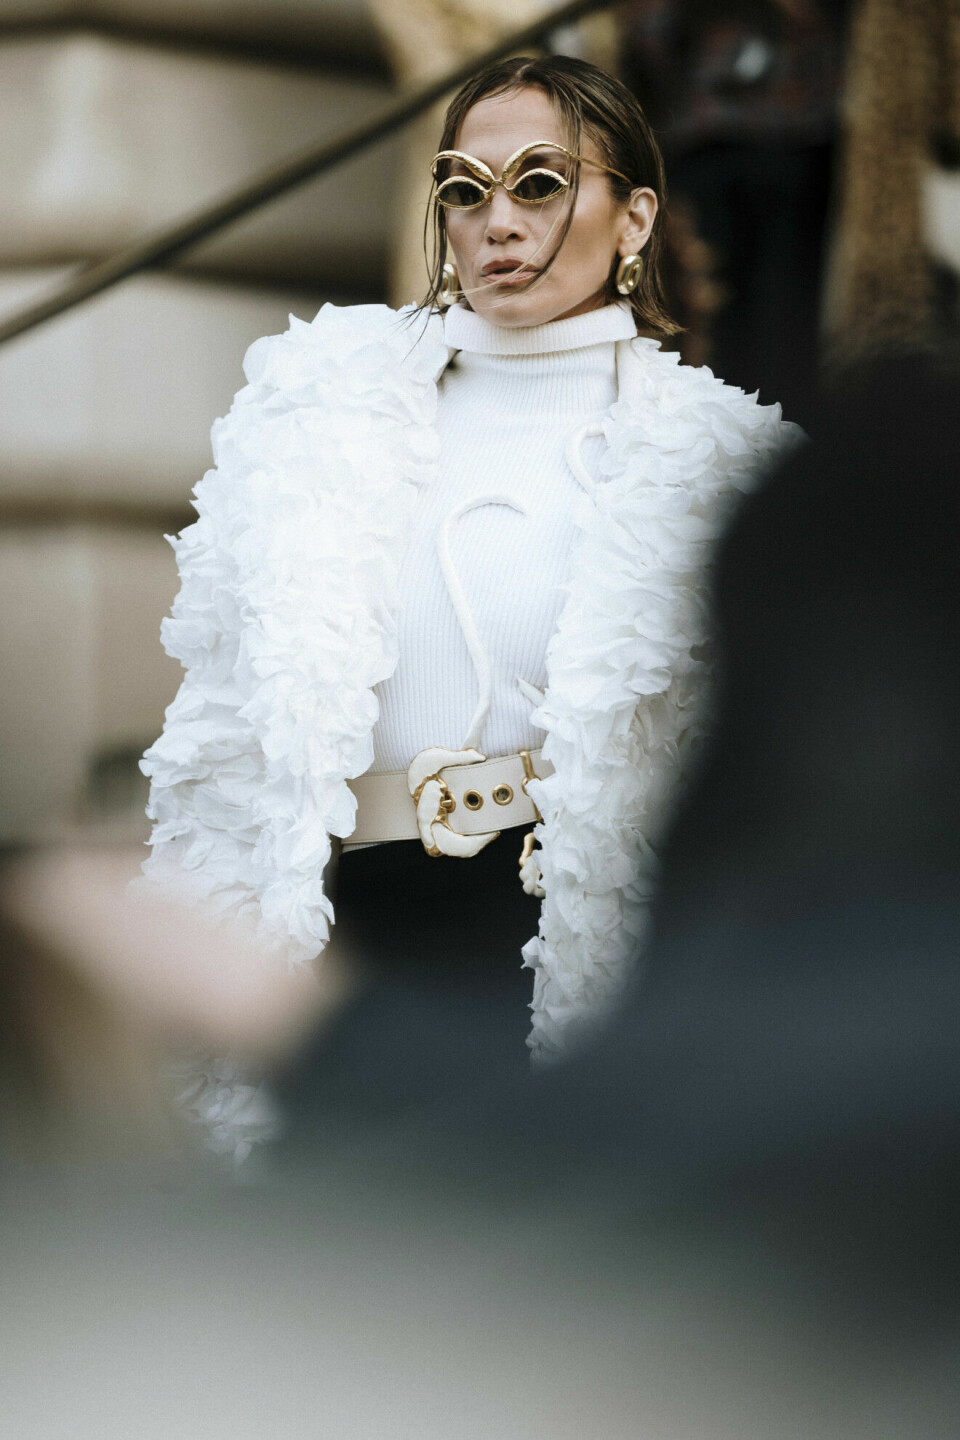 Det er ikke første gang J.Lo setter en trend ... Og nå gjør hun det igjen under Haute Couture-moteuken i Paris.